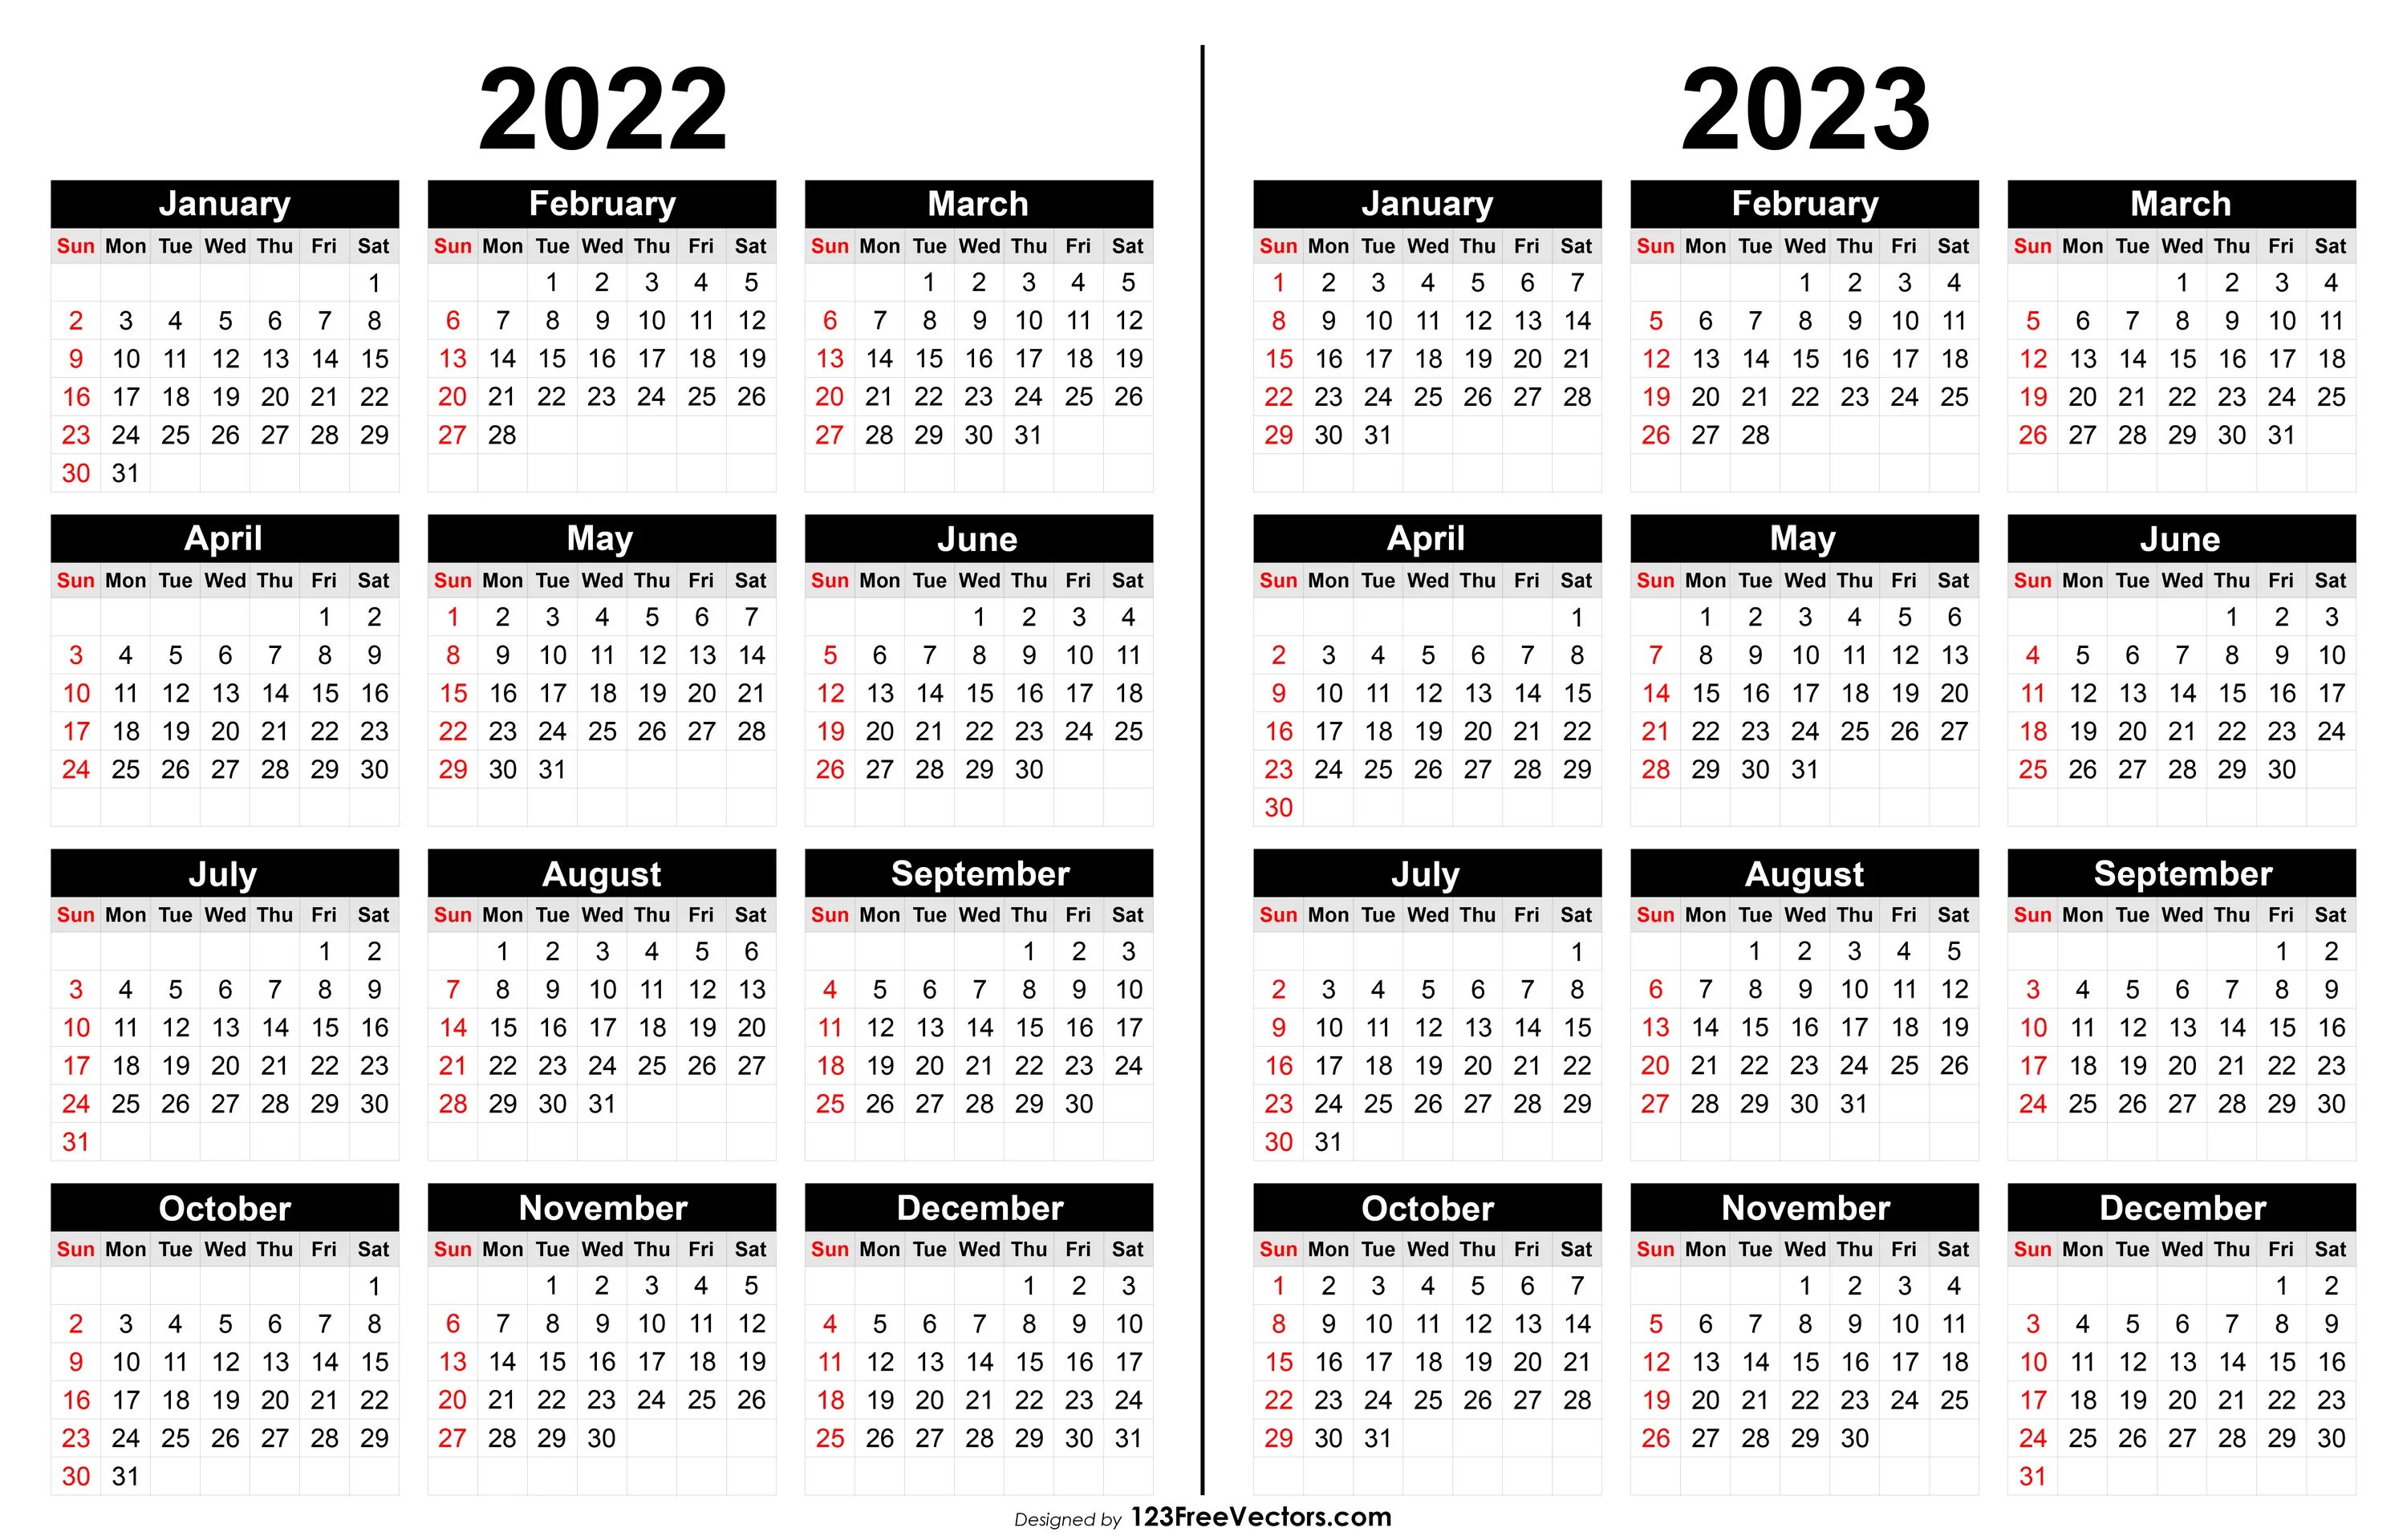 Календарь крупный шрифт. Календарь 2019 2020 2021 2022. Мини календарь 2022 2023. Календарь 2019 2020 2021 года. Календарь 2020-2021 печатать.